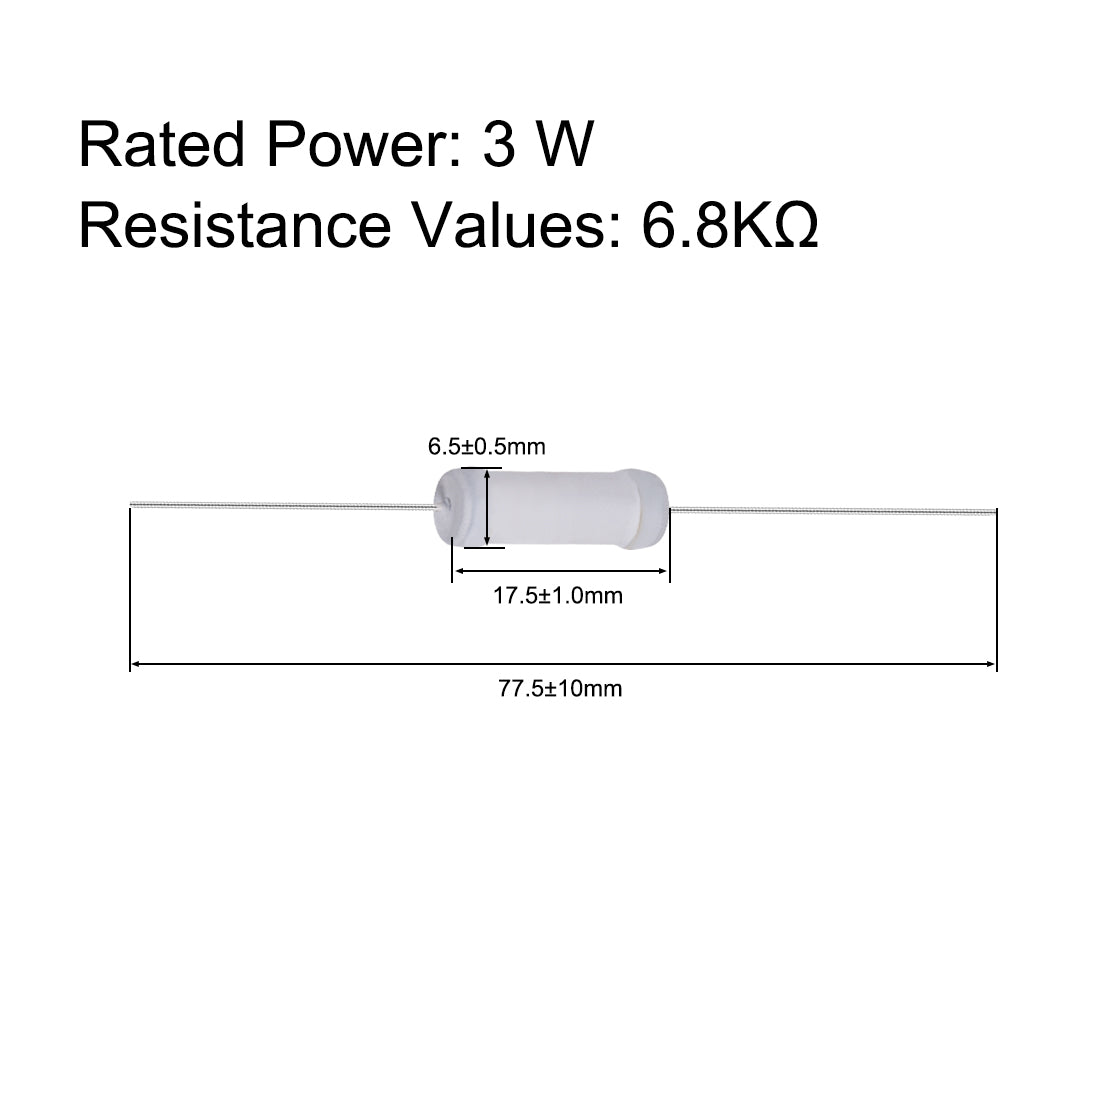 uxcell Uxcell 20pcs 3W 3 Watt Metal Oxide Film Resistor Lead 6.8K Ohm ±5% Tolerance